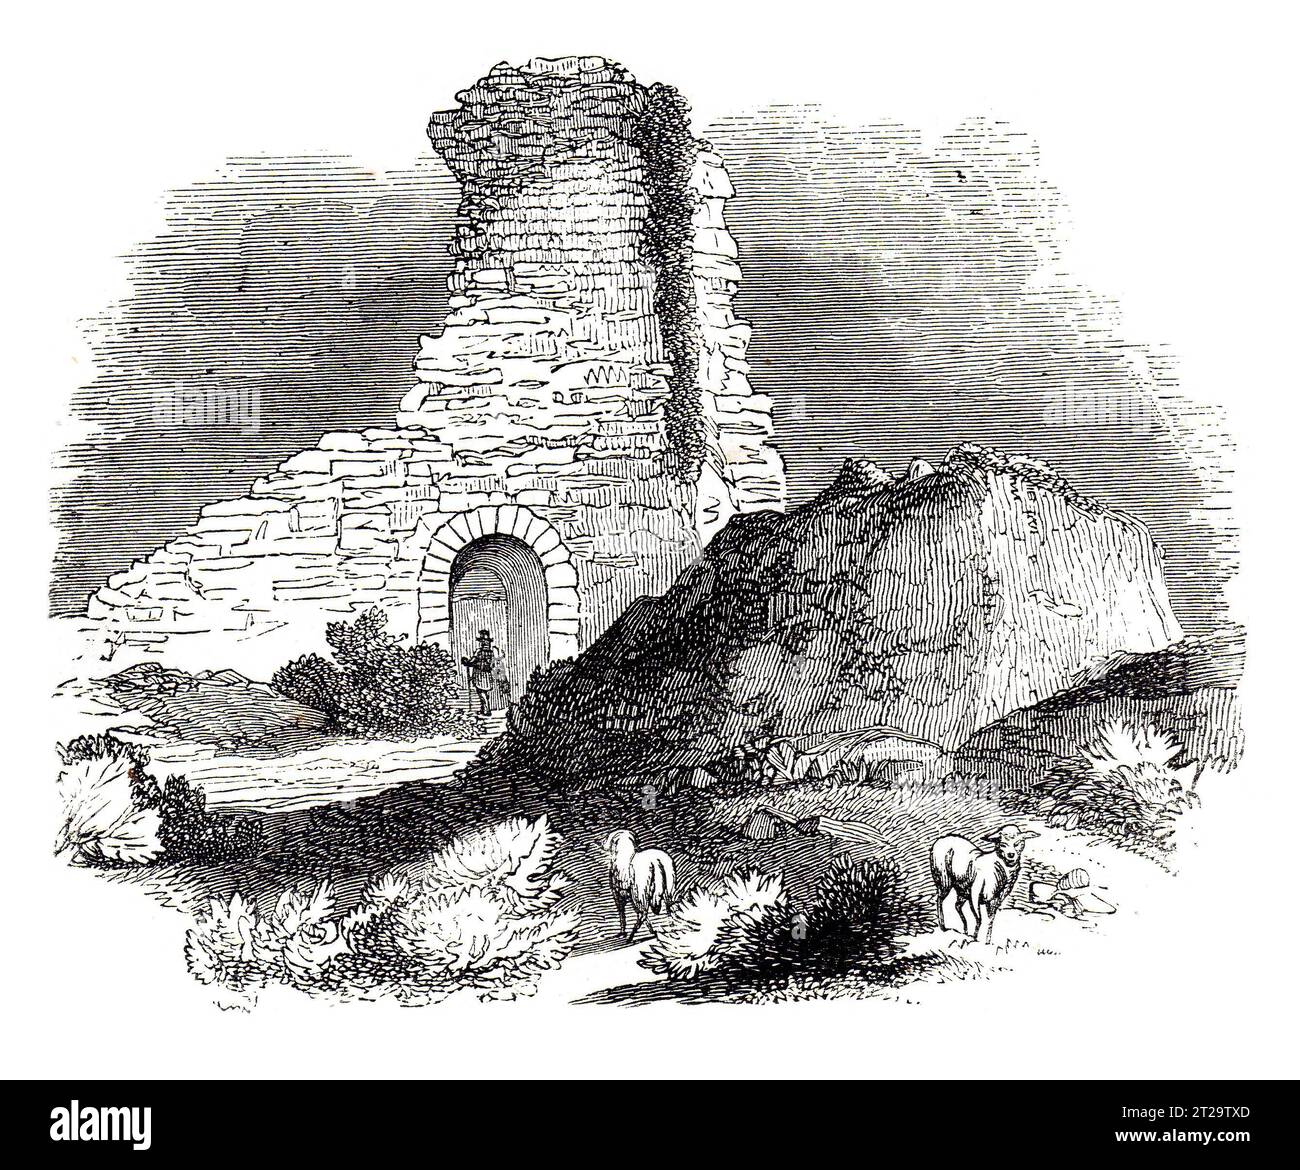 Les ruines du château de Pevensey, East Sussex au 19e siècle. Illustration en noir et blanc de la 'Vieille Angleterre' publiée par James Sangster en 1860. Banque D'Images